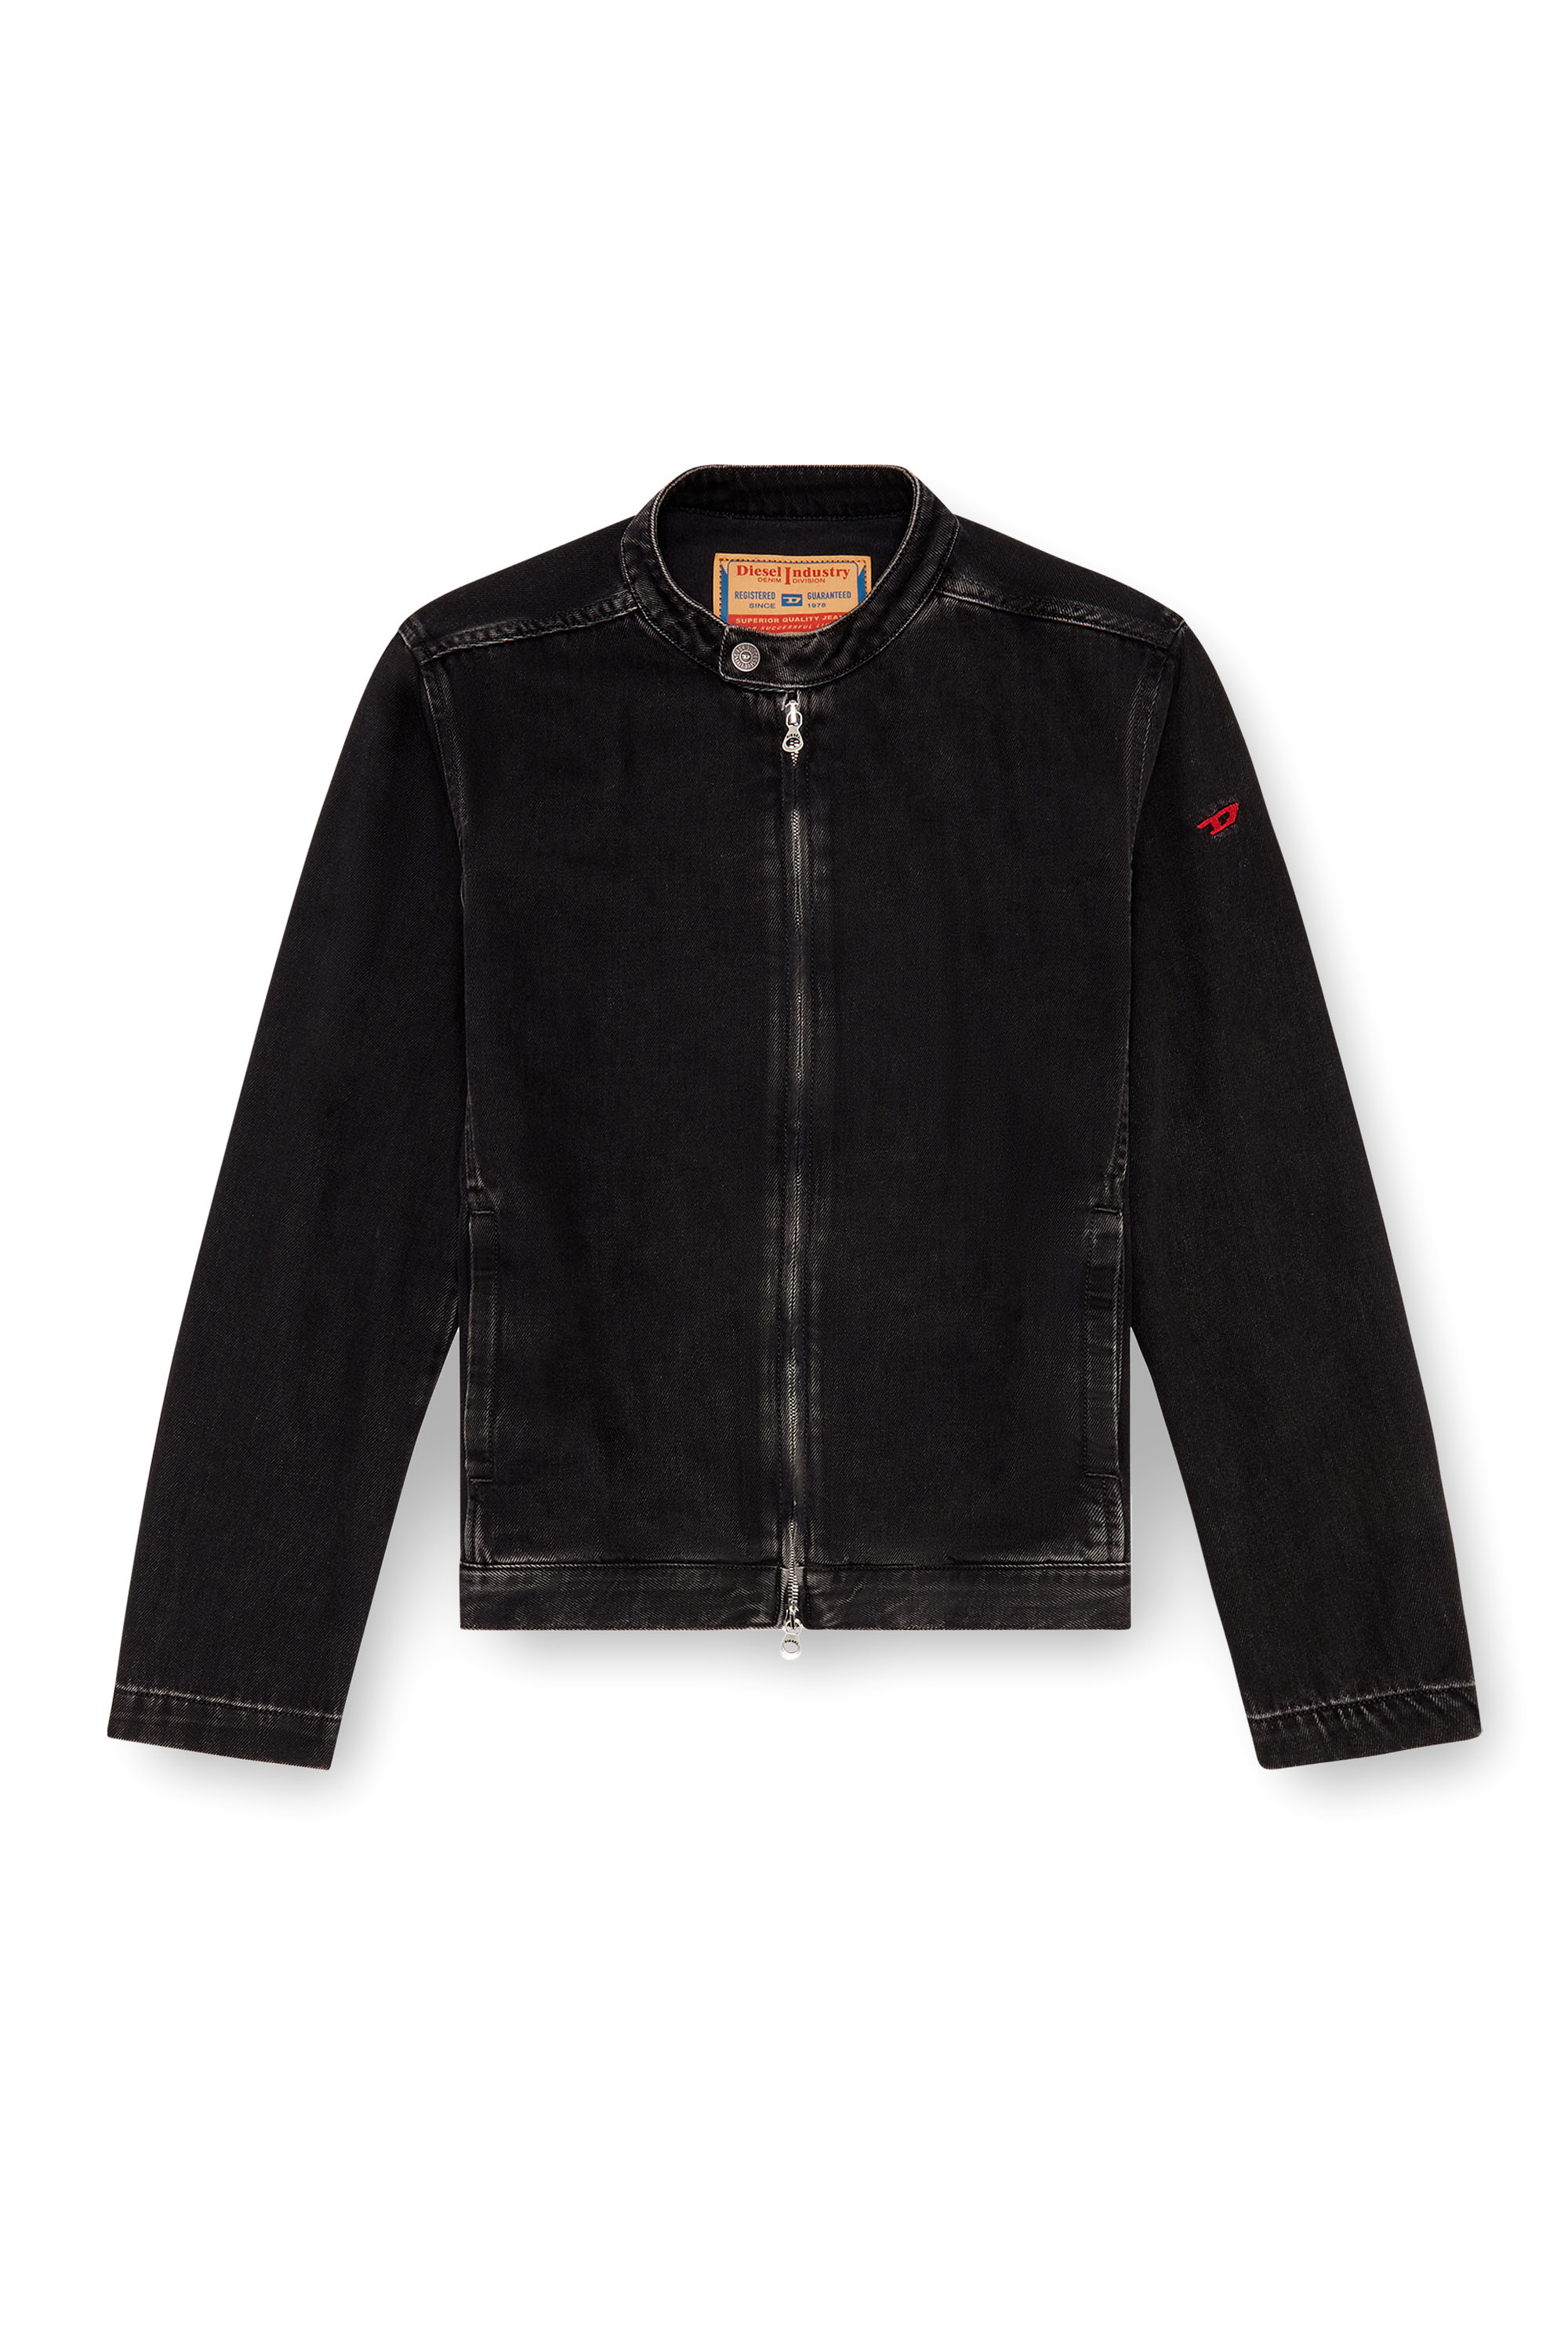 Diesel - D-GLORY, Male Moto jacket in clean-wash denim in Black - Image 3